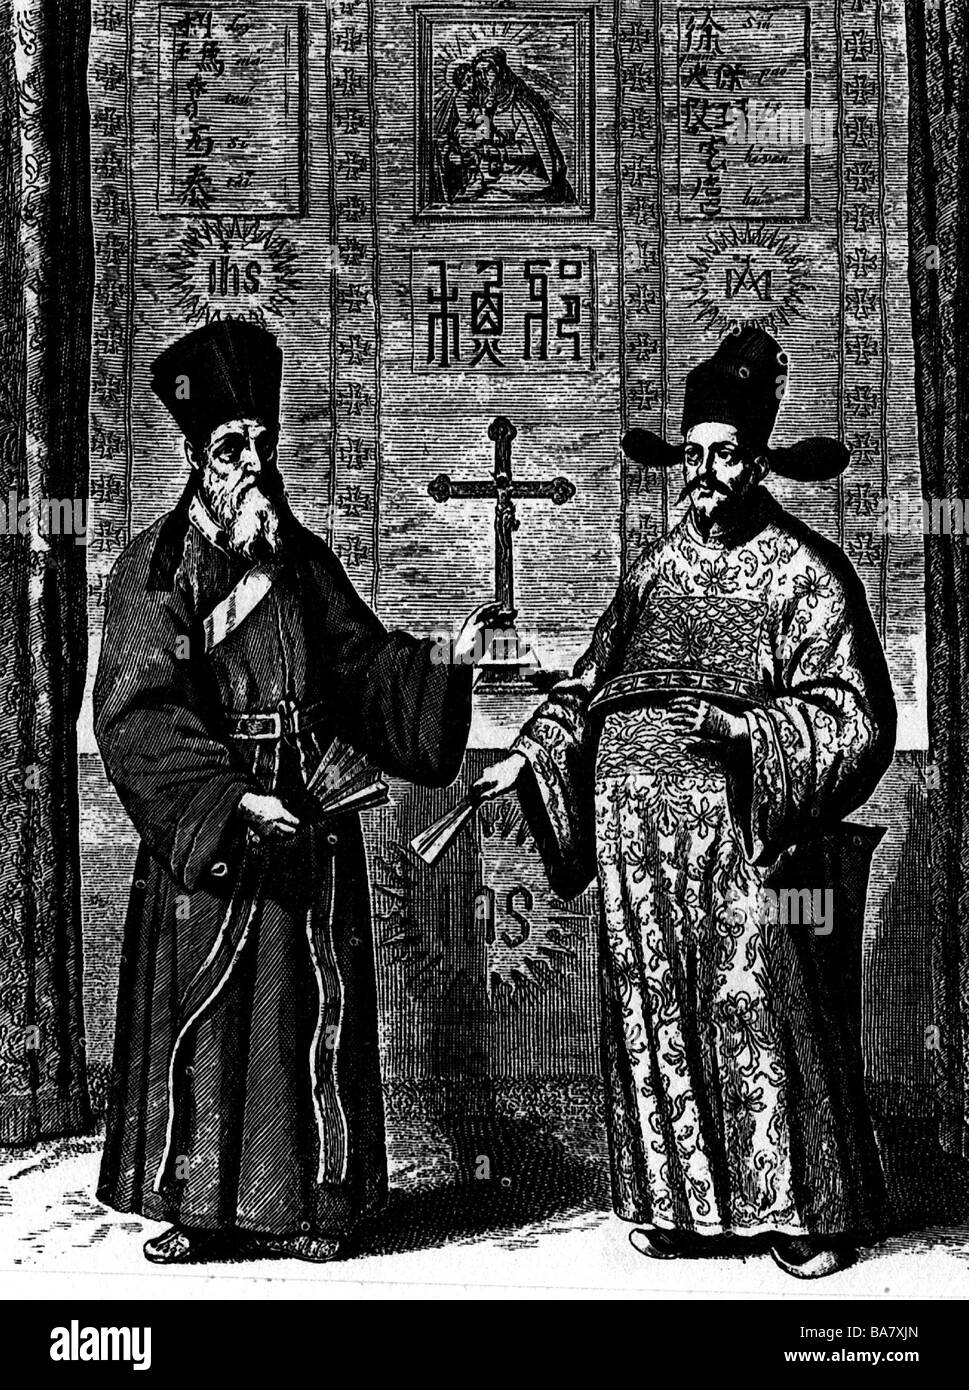 Ricci, Matteo, 6.10.1552 - 11.5.1610, prêtre jésuite, missionnaire en Chine, pleine longueur (à gauche), avec le chinois Xu Guangqi bureaucrate, gravure sur cuivre, vers 1600, l'artiste n'a pas d'auteur pour être effacé Banque D'Images